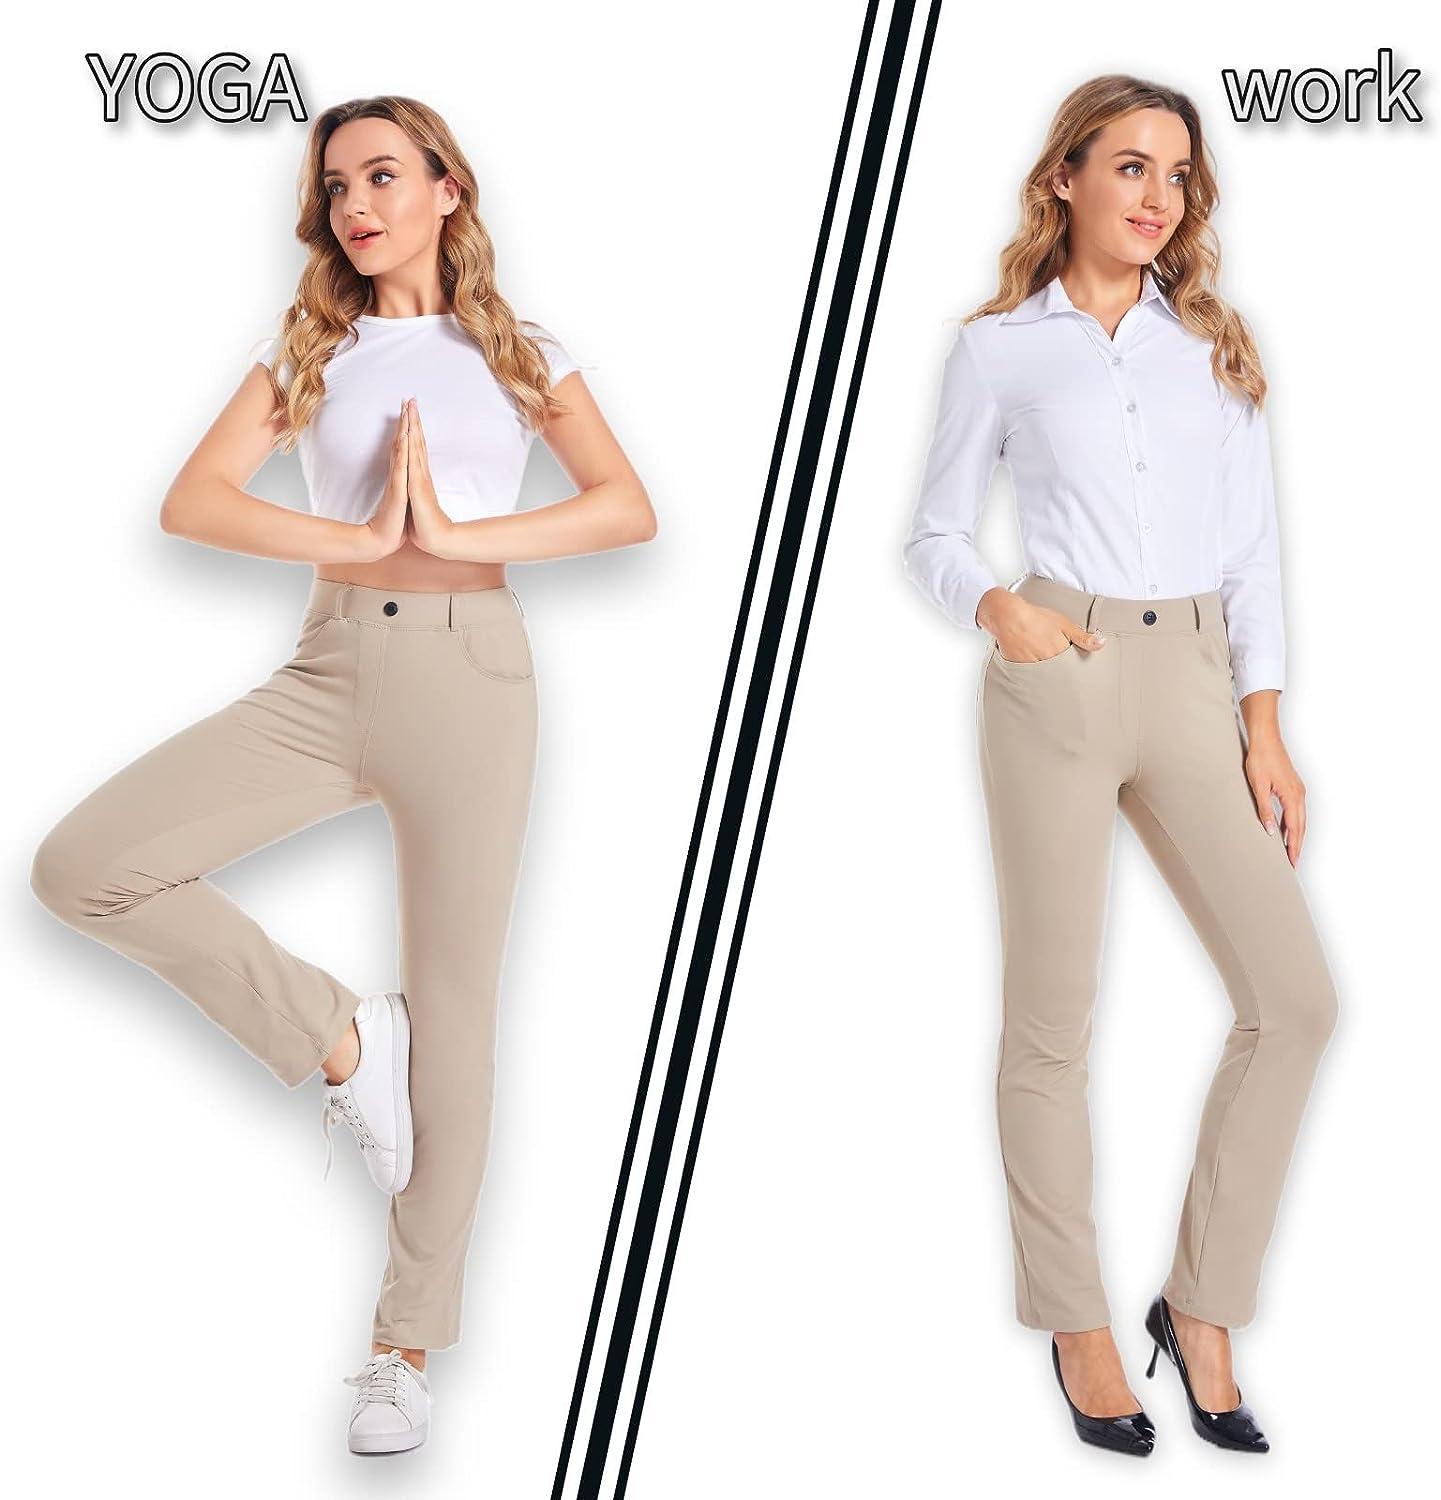 HARTPOR Women's Yoga Dress Pants Stretchy for Work Office Slacks